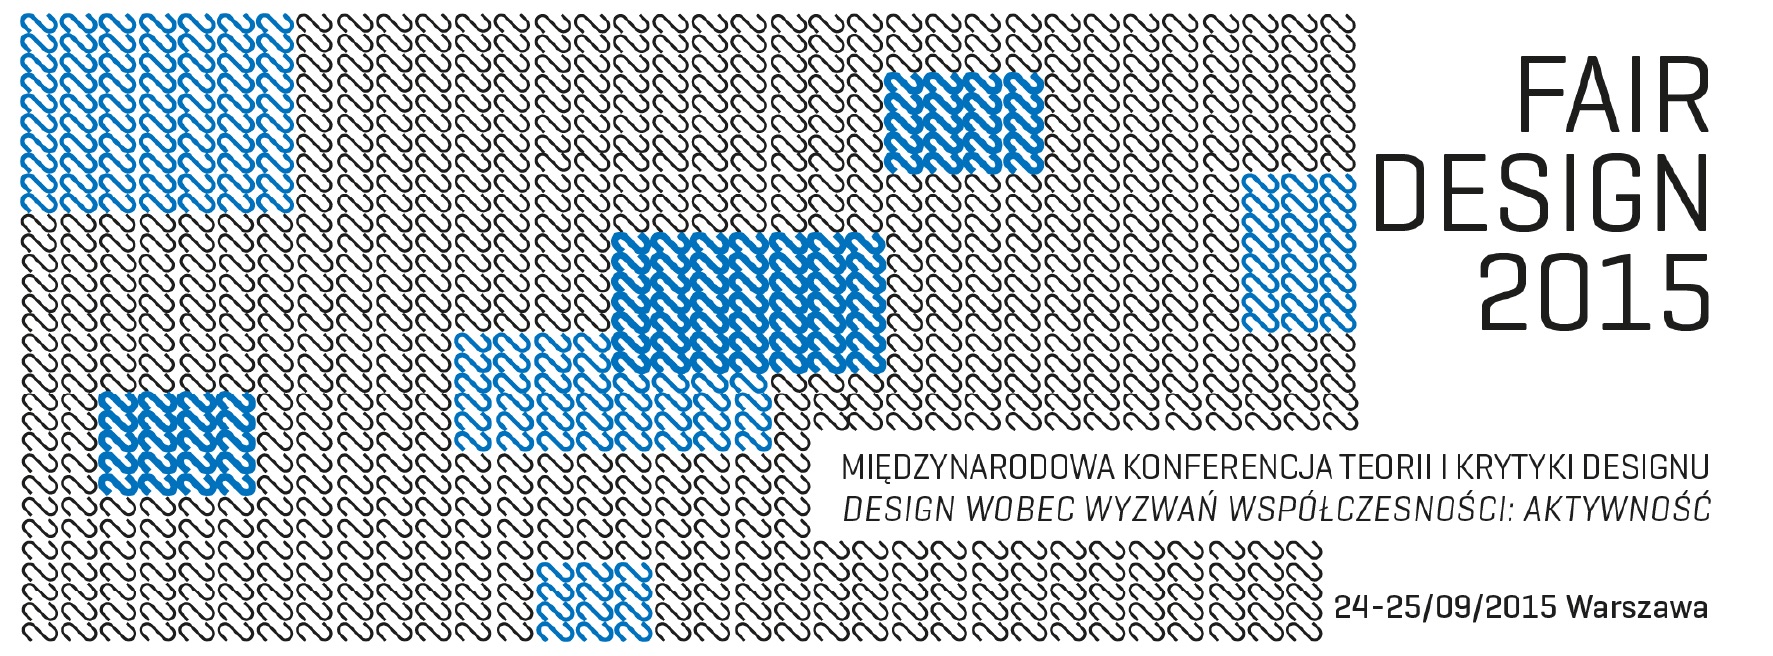 Fair Design 2015. Międzynarodowa konferencja teorii i krytyki designu – Design wobec wyzwań współczesności: aktywność (źródło: materiały prasowe organizatora)